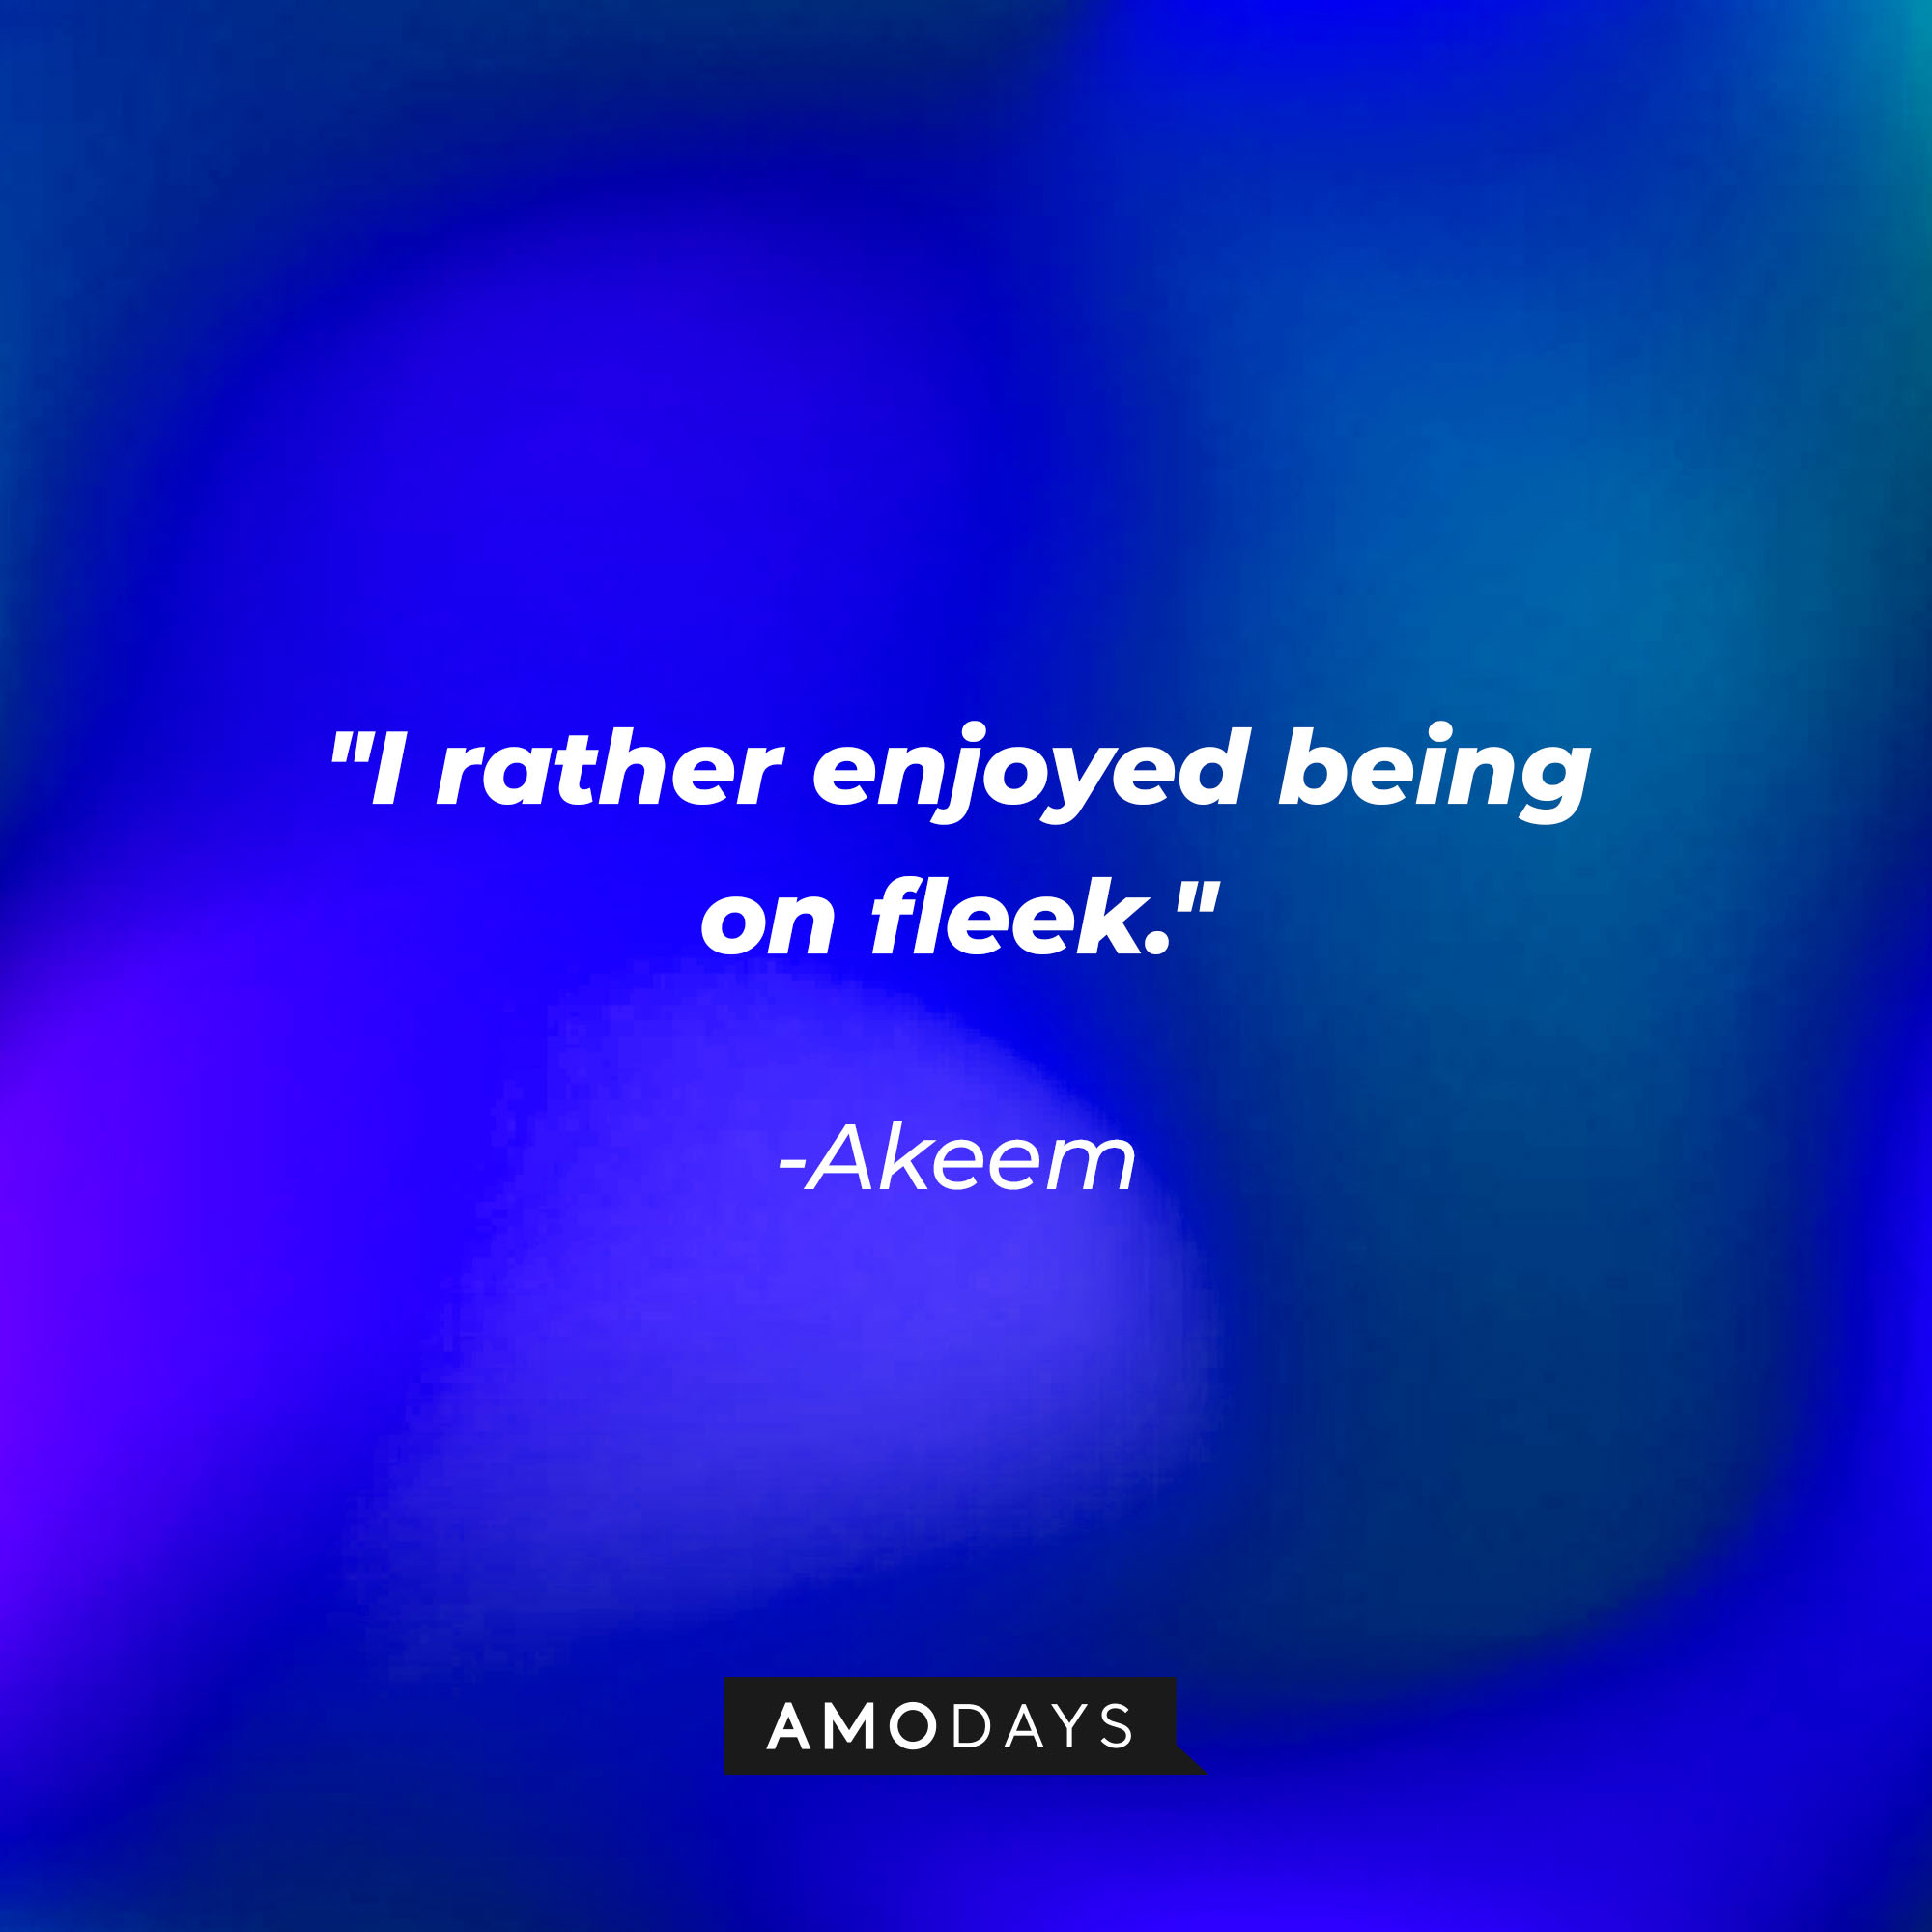 Akeem’s quote: "I rather enjoyed being on fleek." | Source: AmoDays